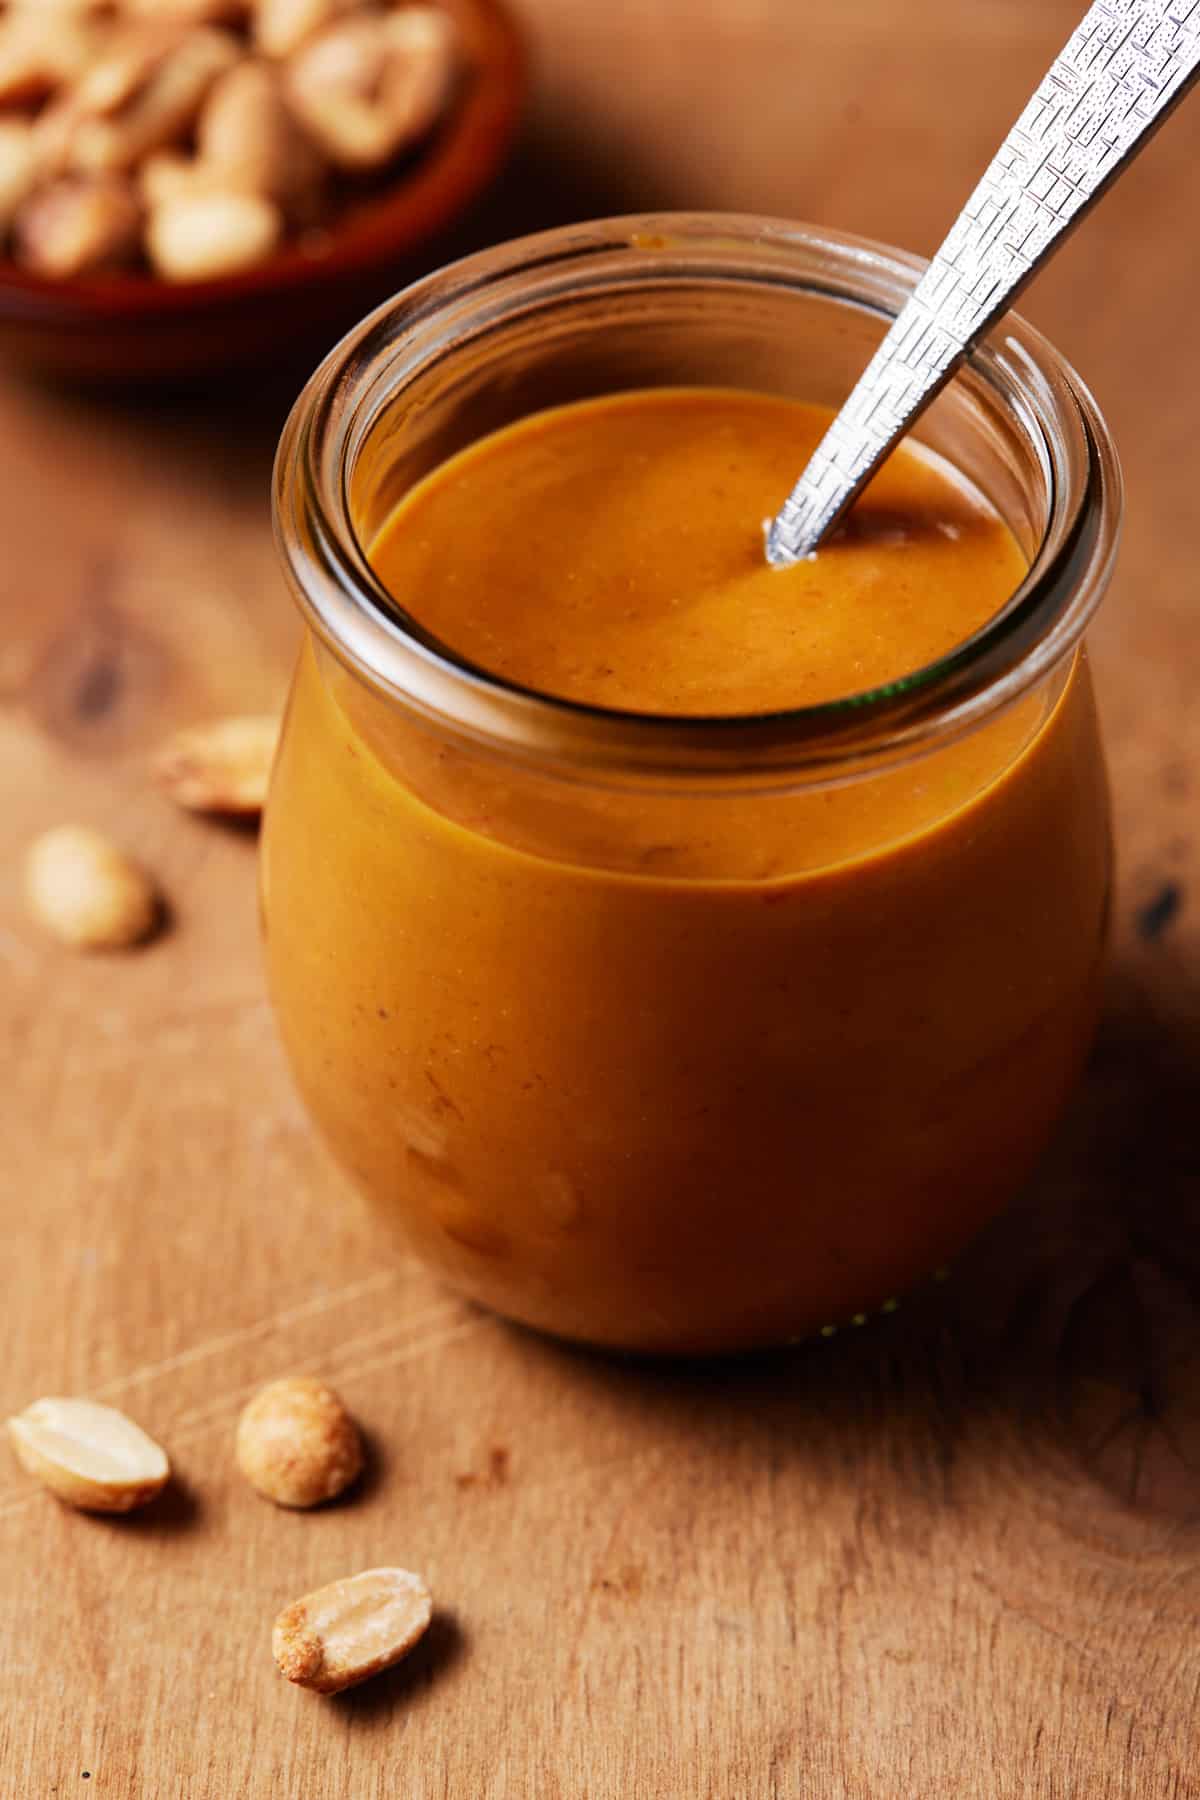 Peanut sauce in a jar.